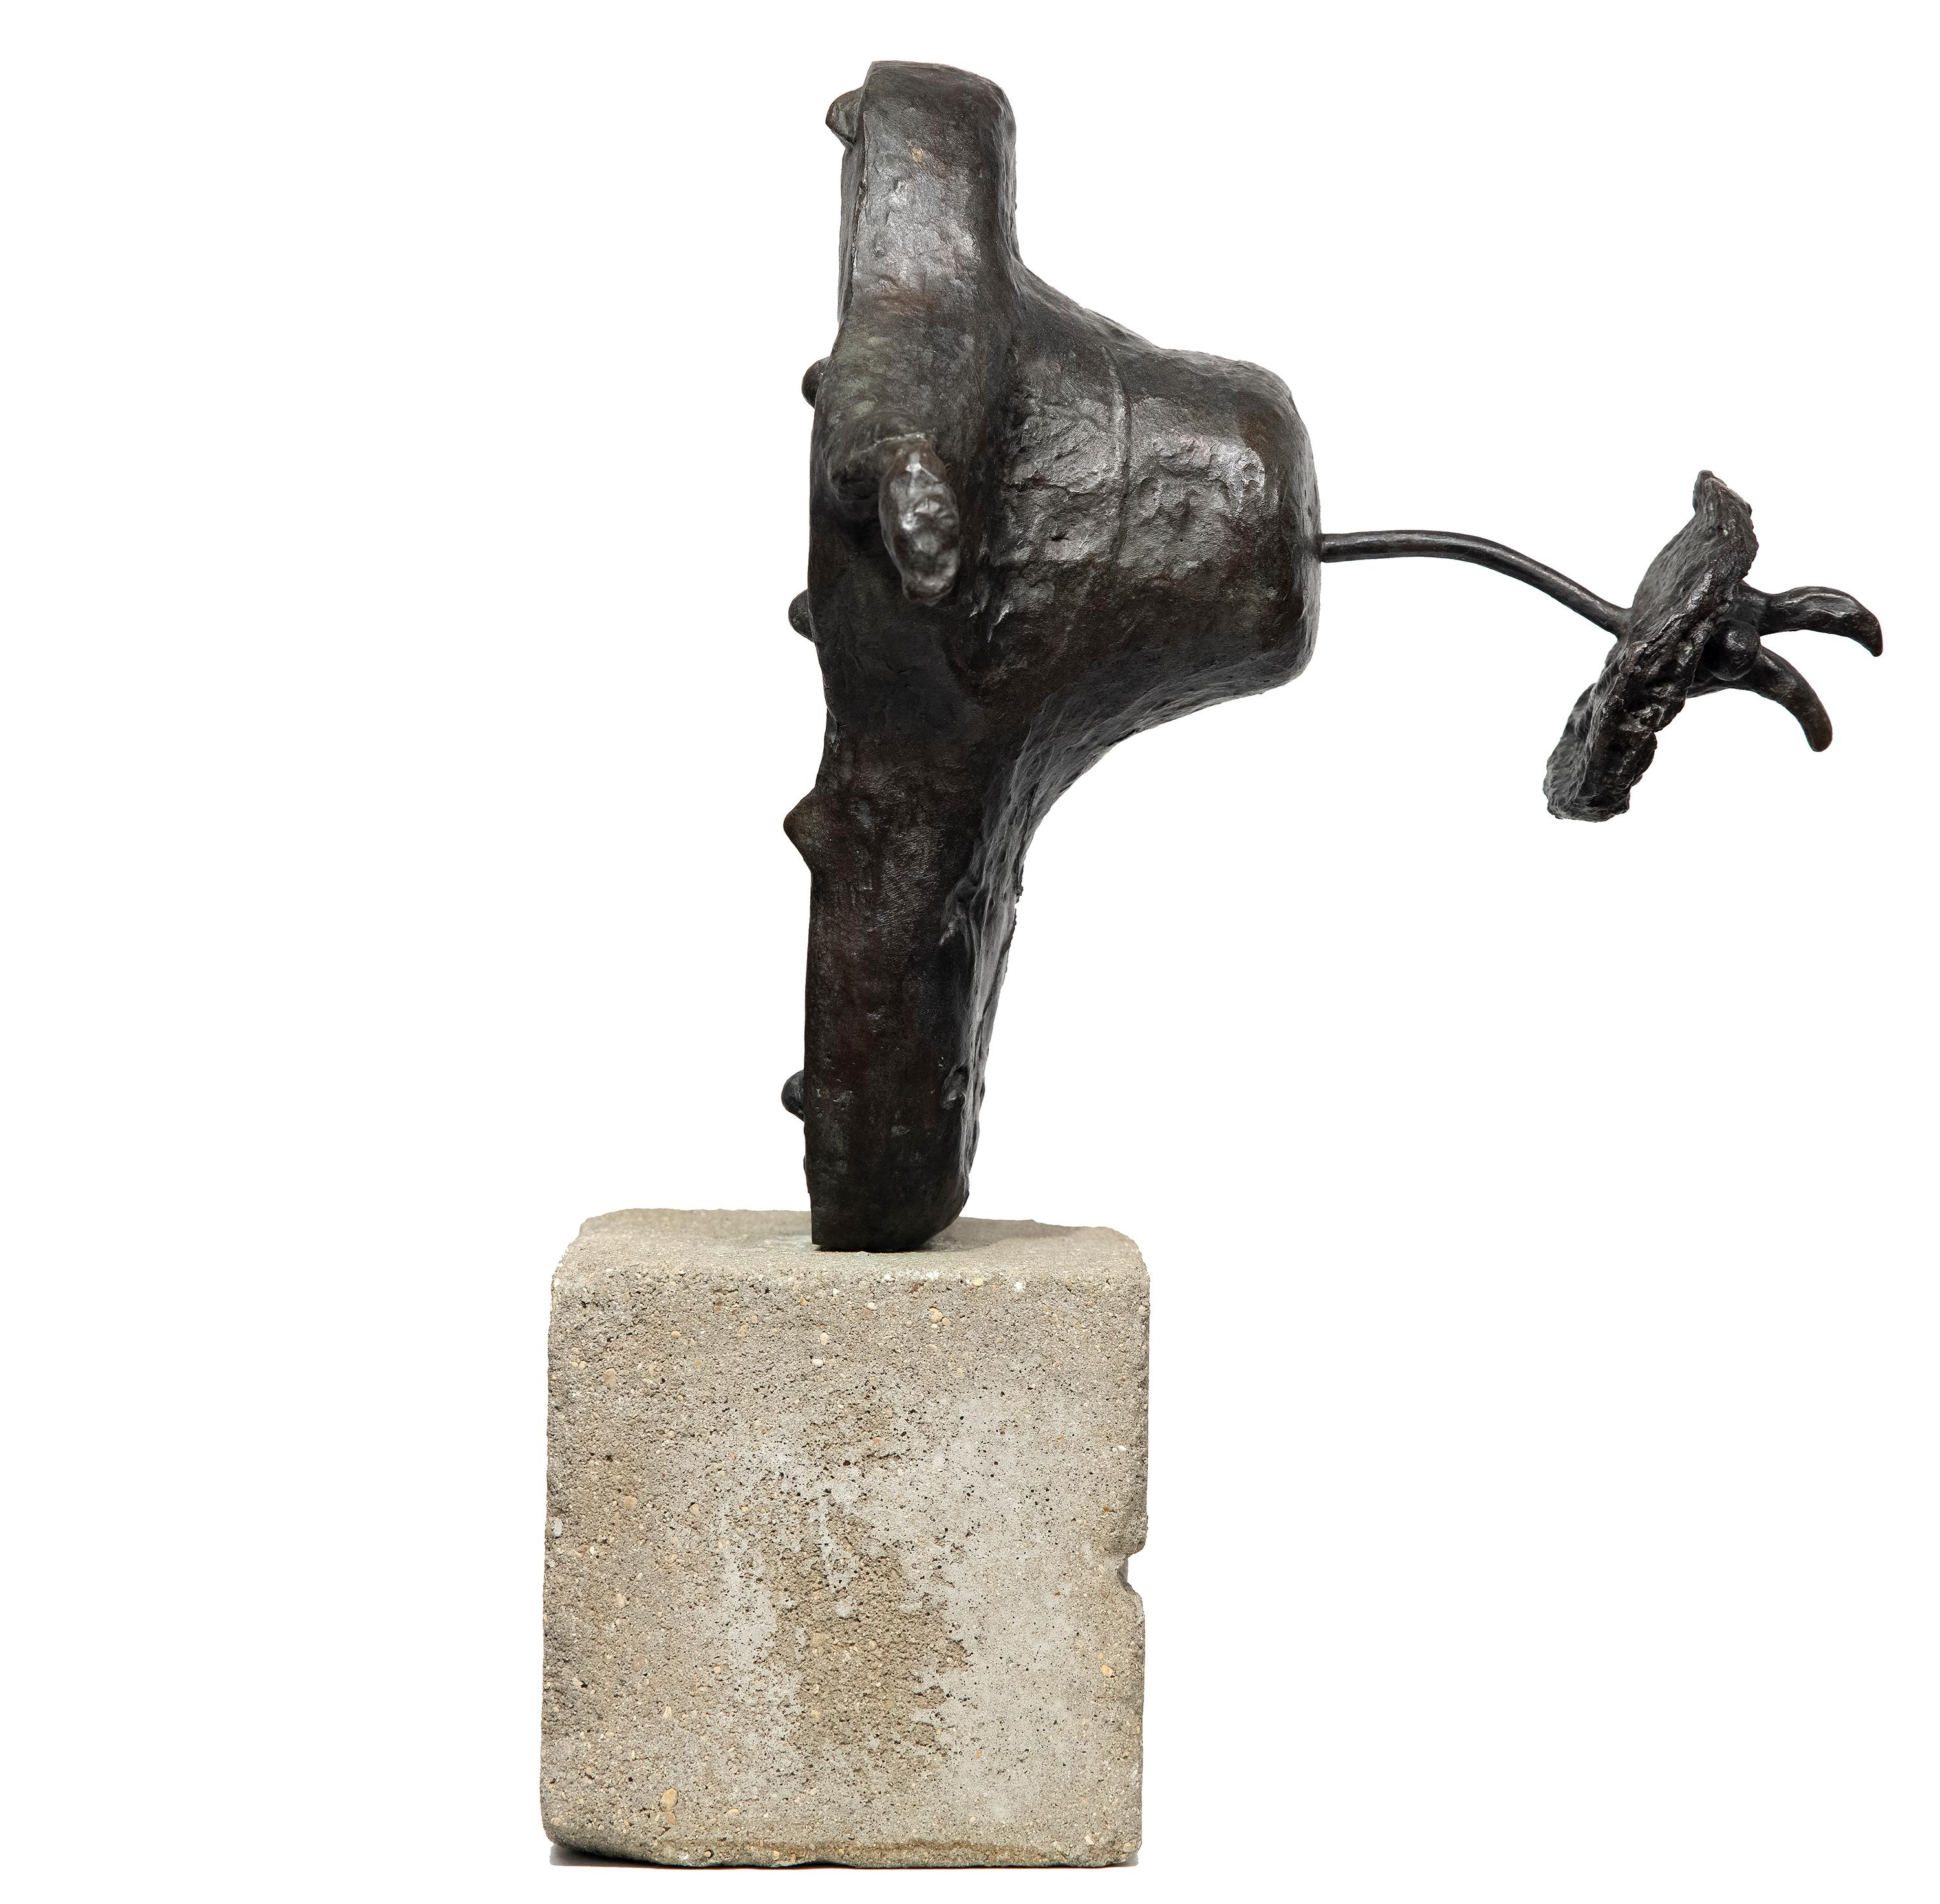 L'Oiseau - Or Figurative Sculpture par Joan Miró